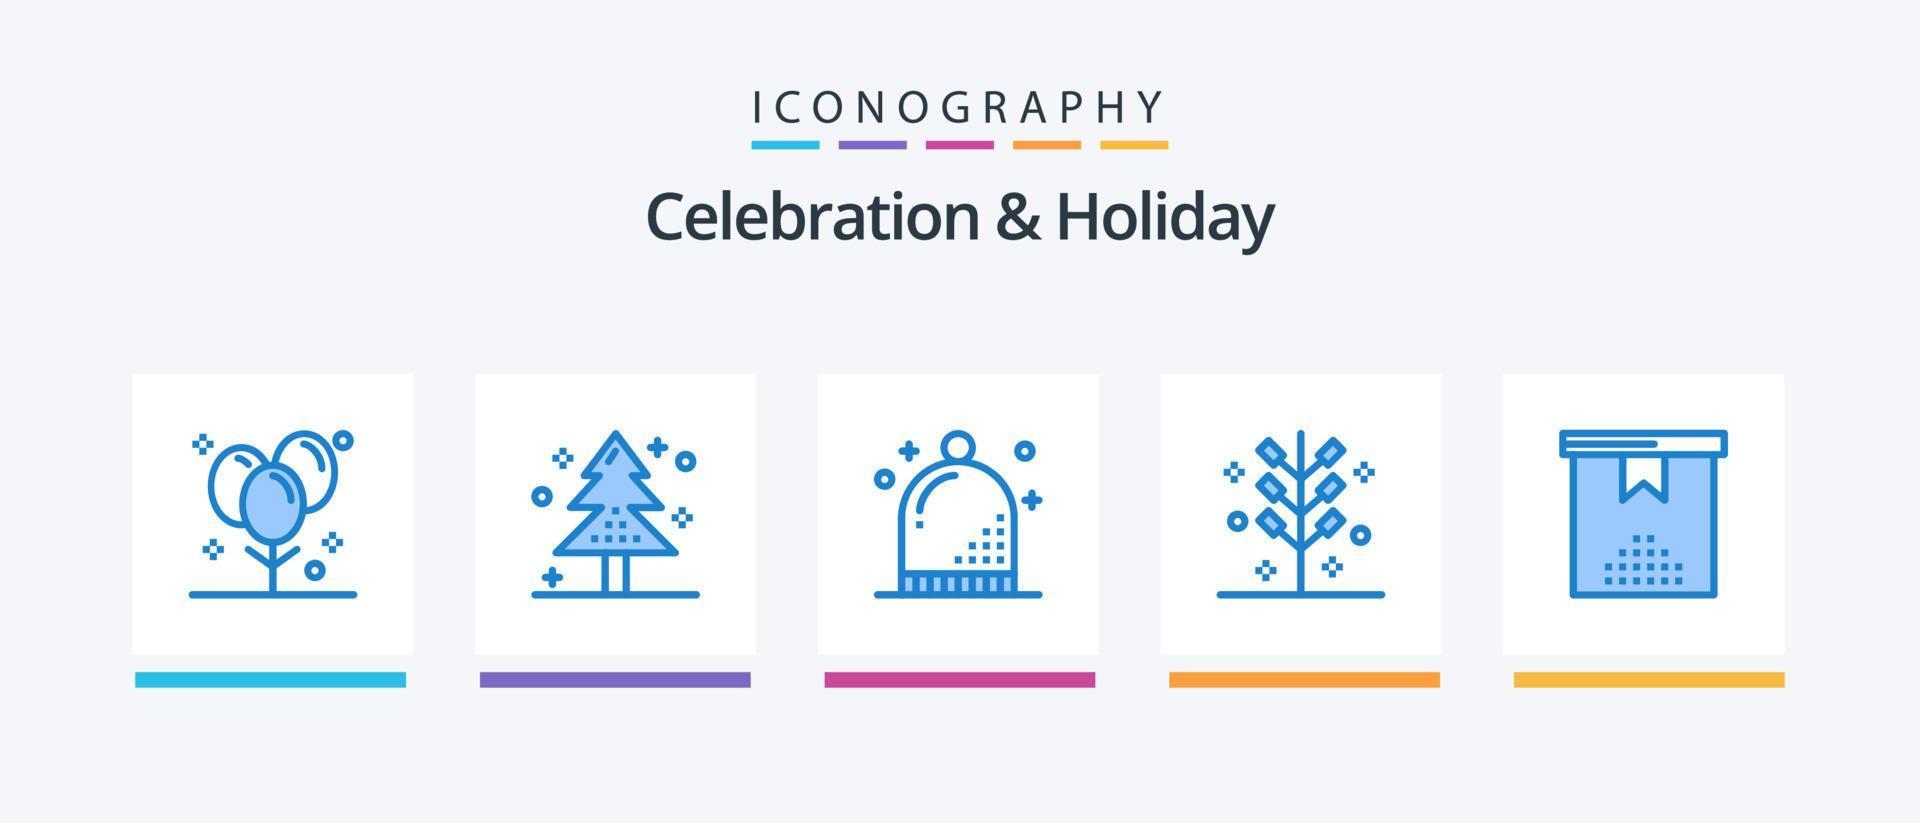 feier und feiertag blau 5 icon pack inklusive festlich. Feier. Urlaub. Winter. Hut. kreatives Symboldesign vektor